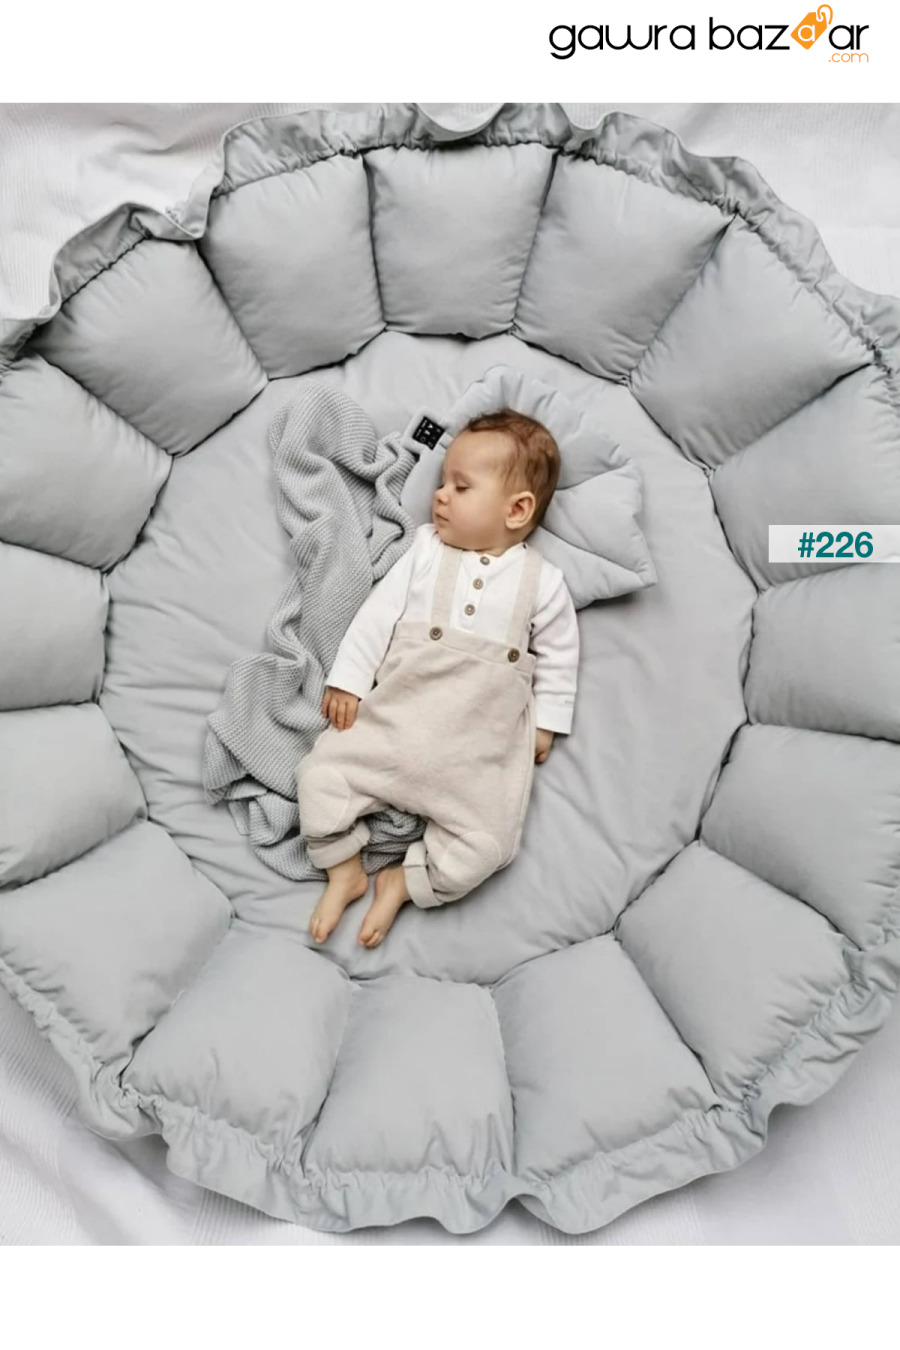 سجادة اللعب الرمادية القابلة للسحب Jaju-babynest Baby Bed Play Nest Baby Nest Jaju Baby 2